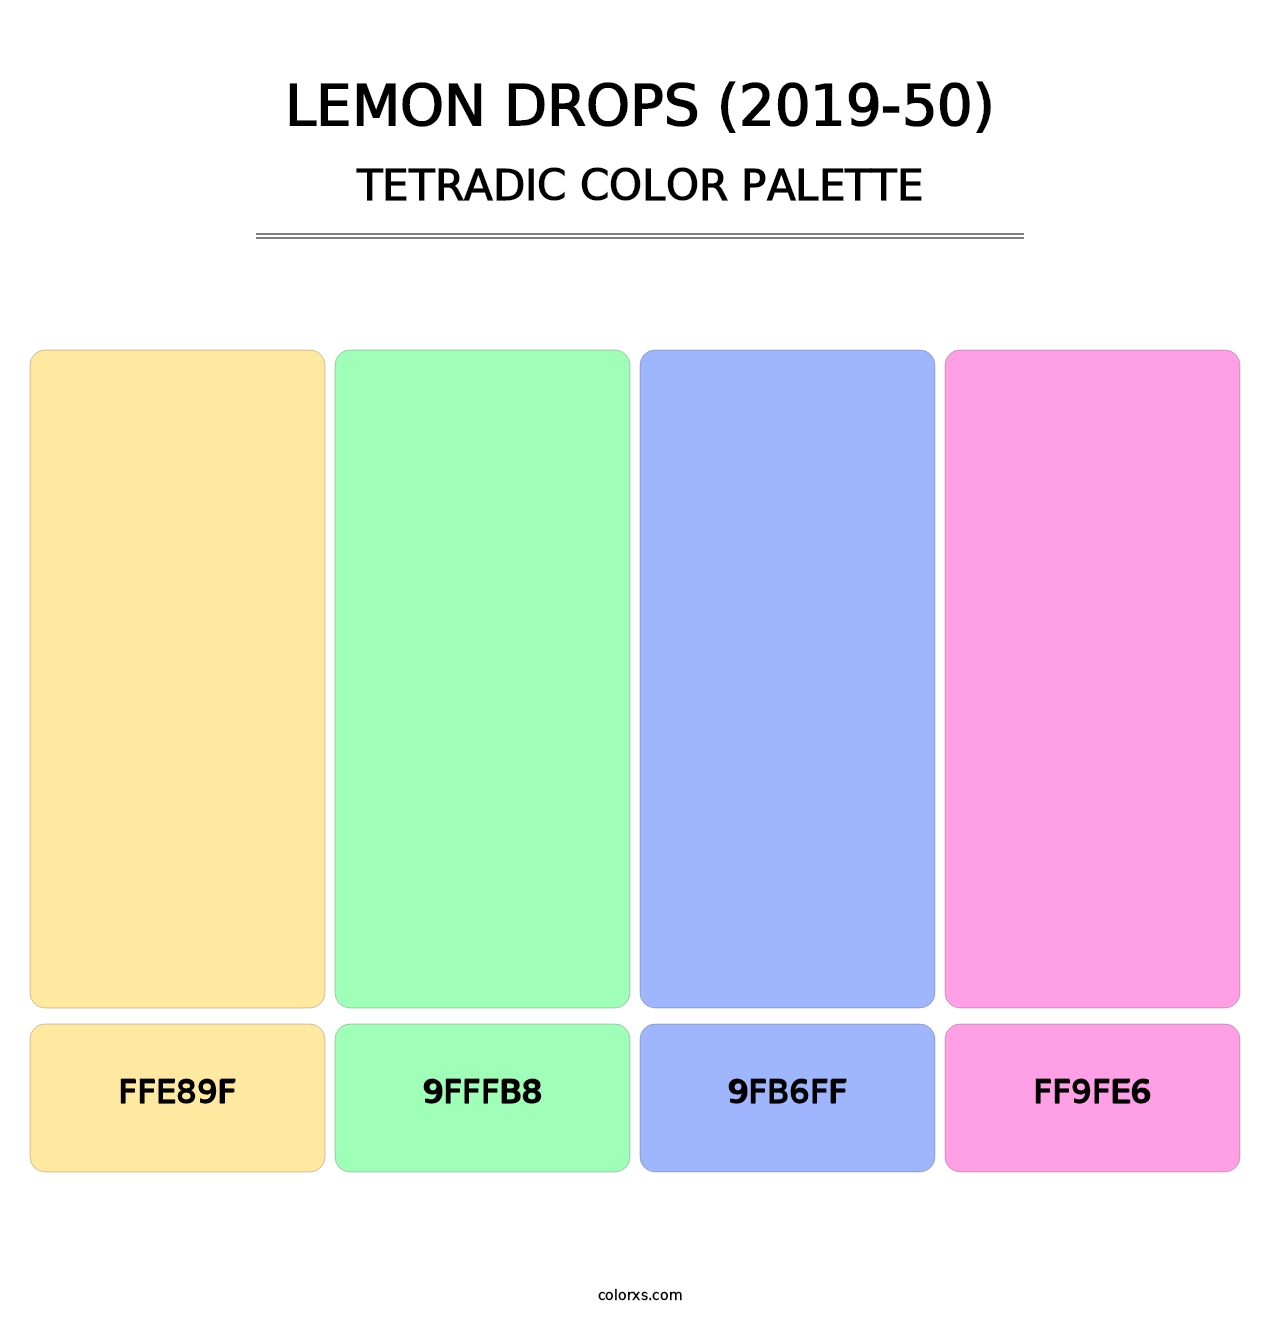 Lemon Drops (2019-50) - Tetradic Color Palette